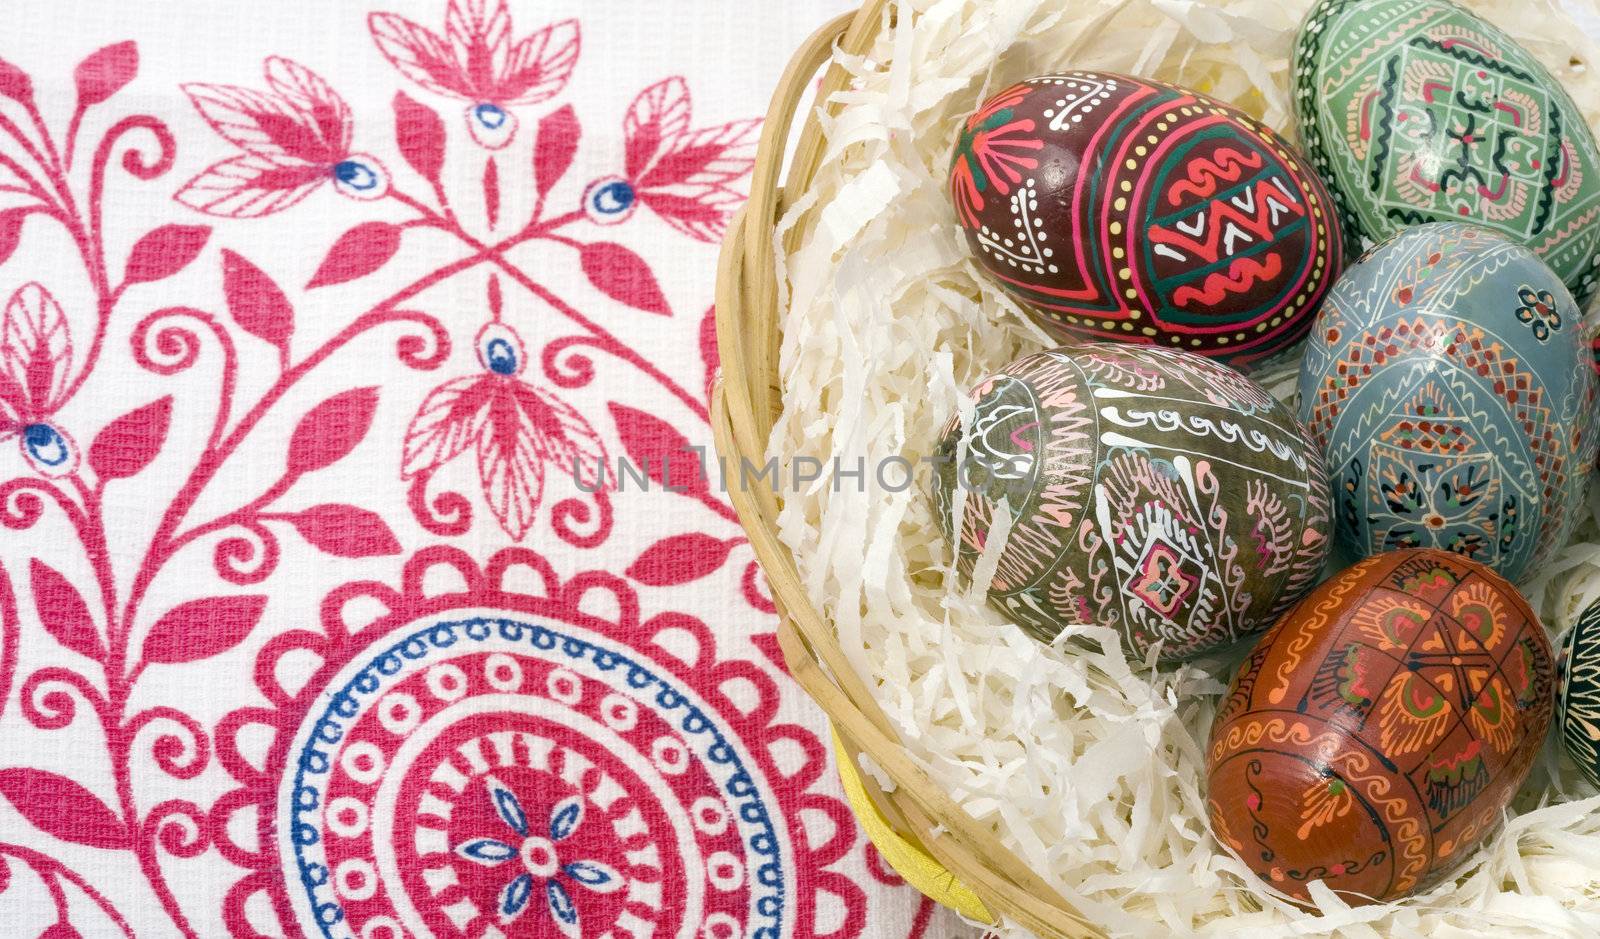 ornamented Easter eggs in bin by lipik